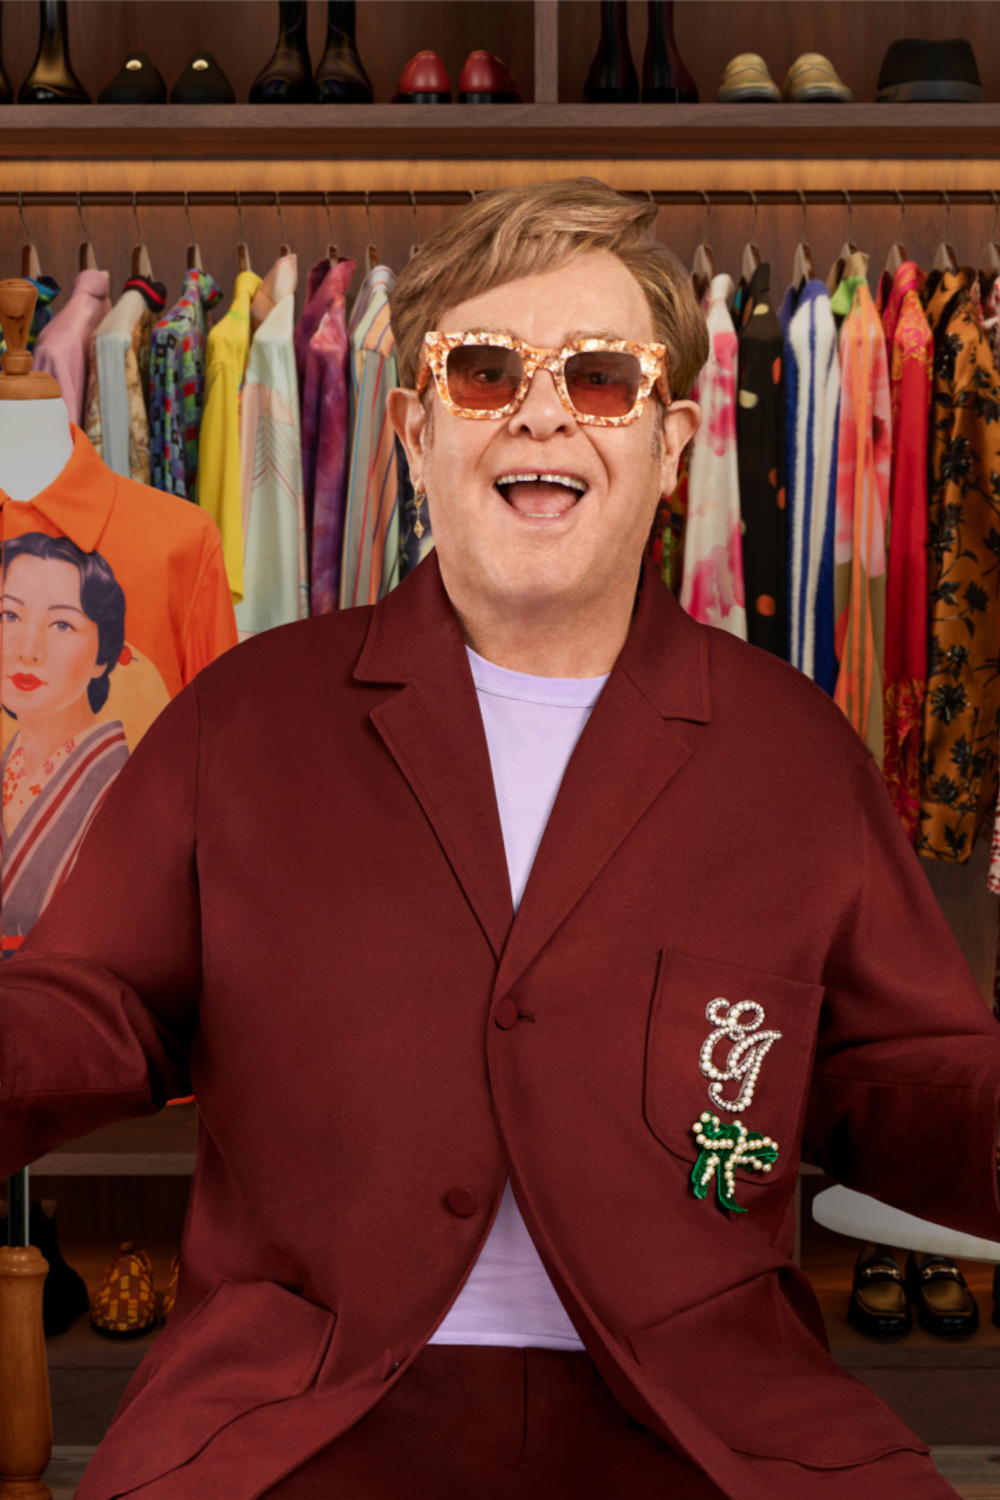 You Can Now Raid Elton John's Wardrobe On eBay